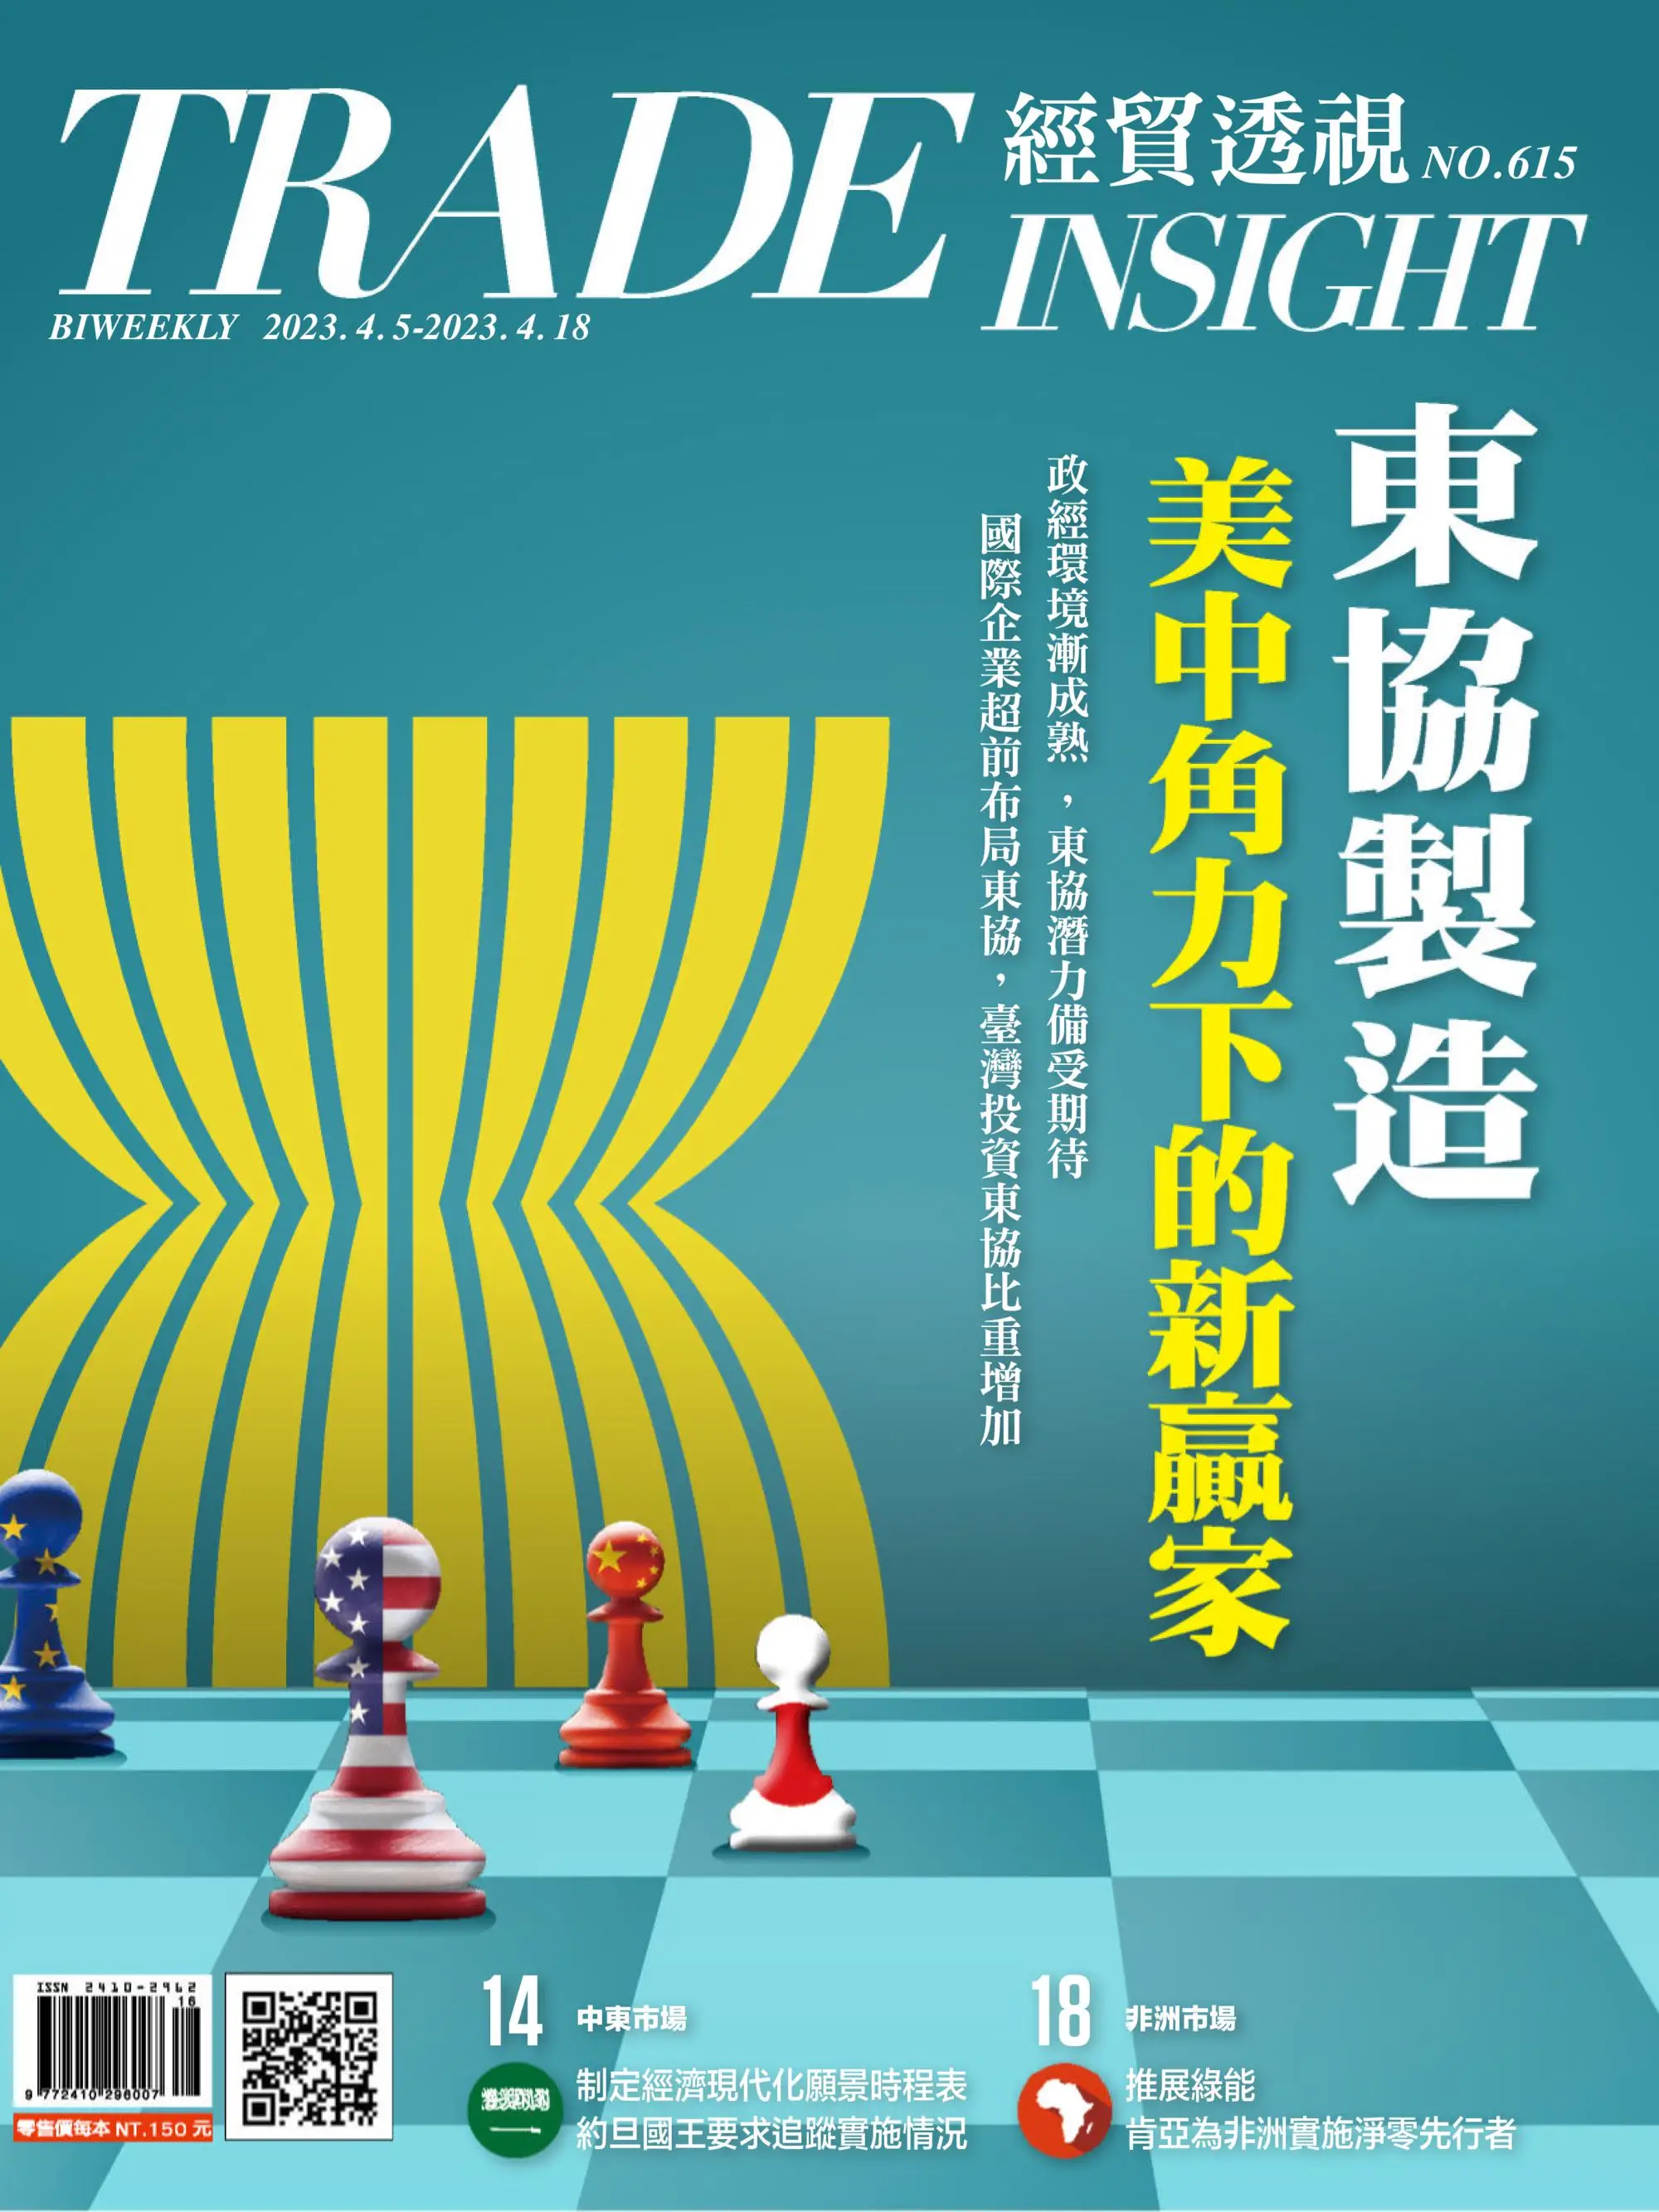 Trade Insight Biweekly 經貿透視雙周刊 2023年4月5日